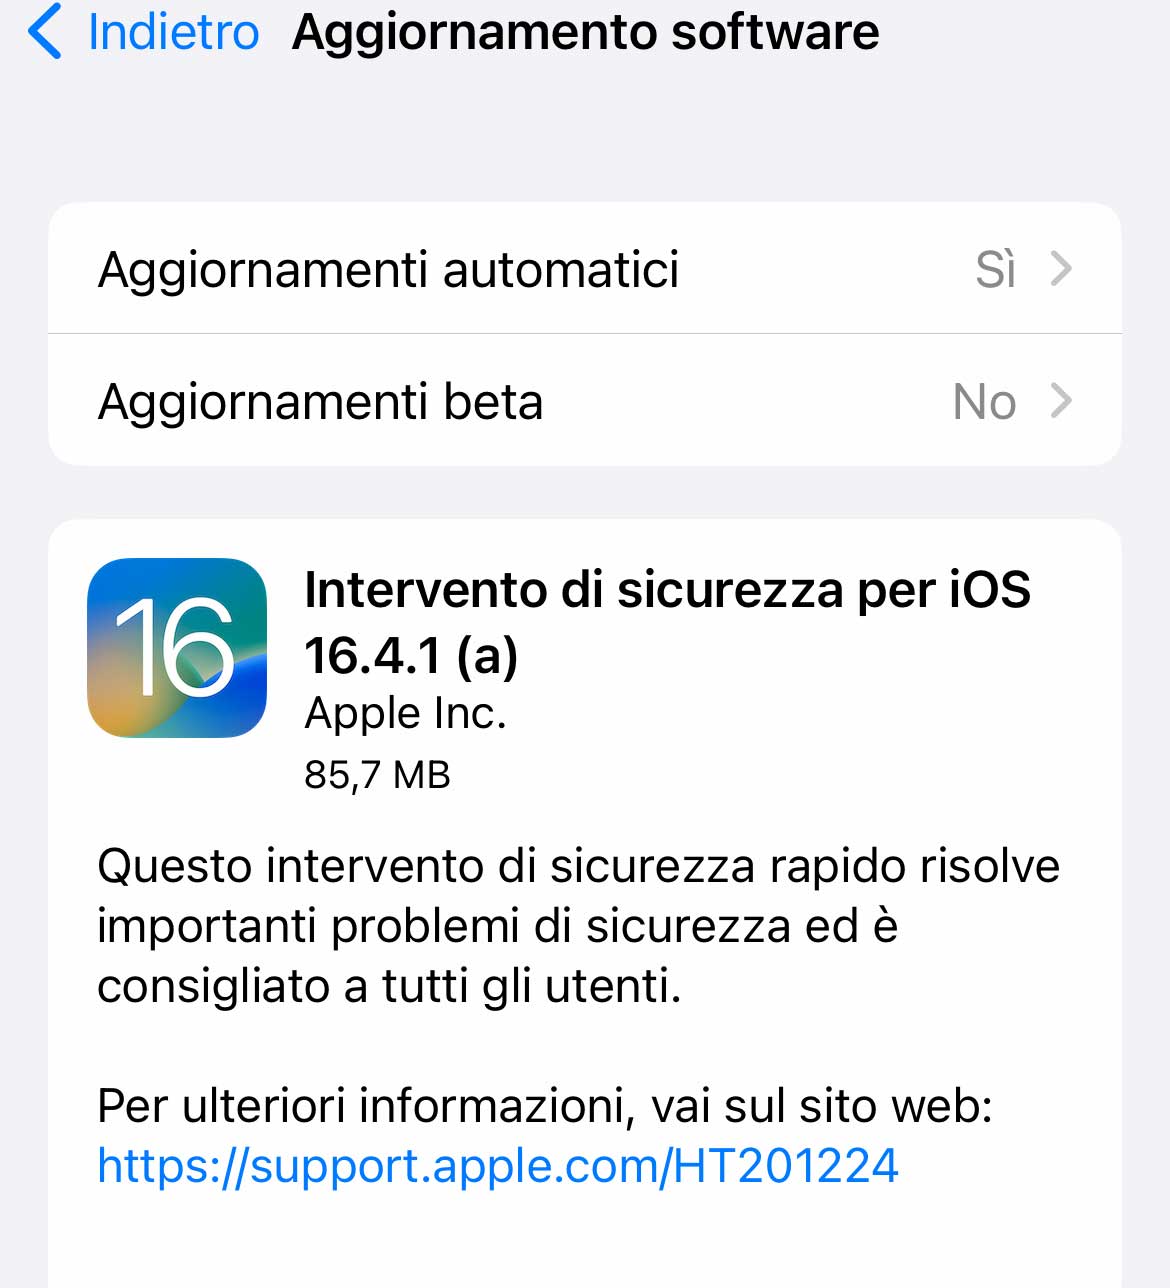 Disponibile intervento di sicurezza rapido per iOS 16.4.1 e macOS Ventura 13.3.1